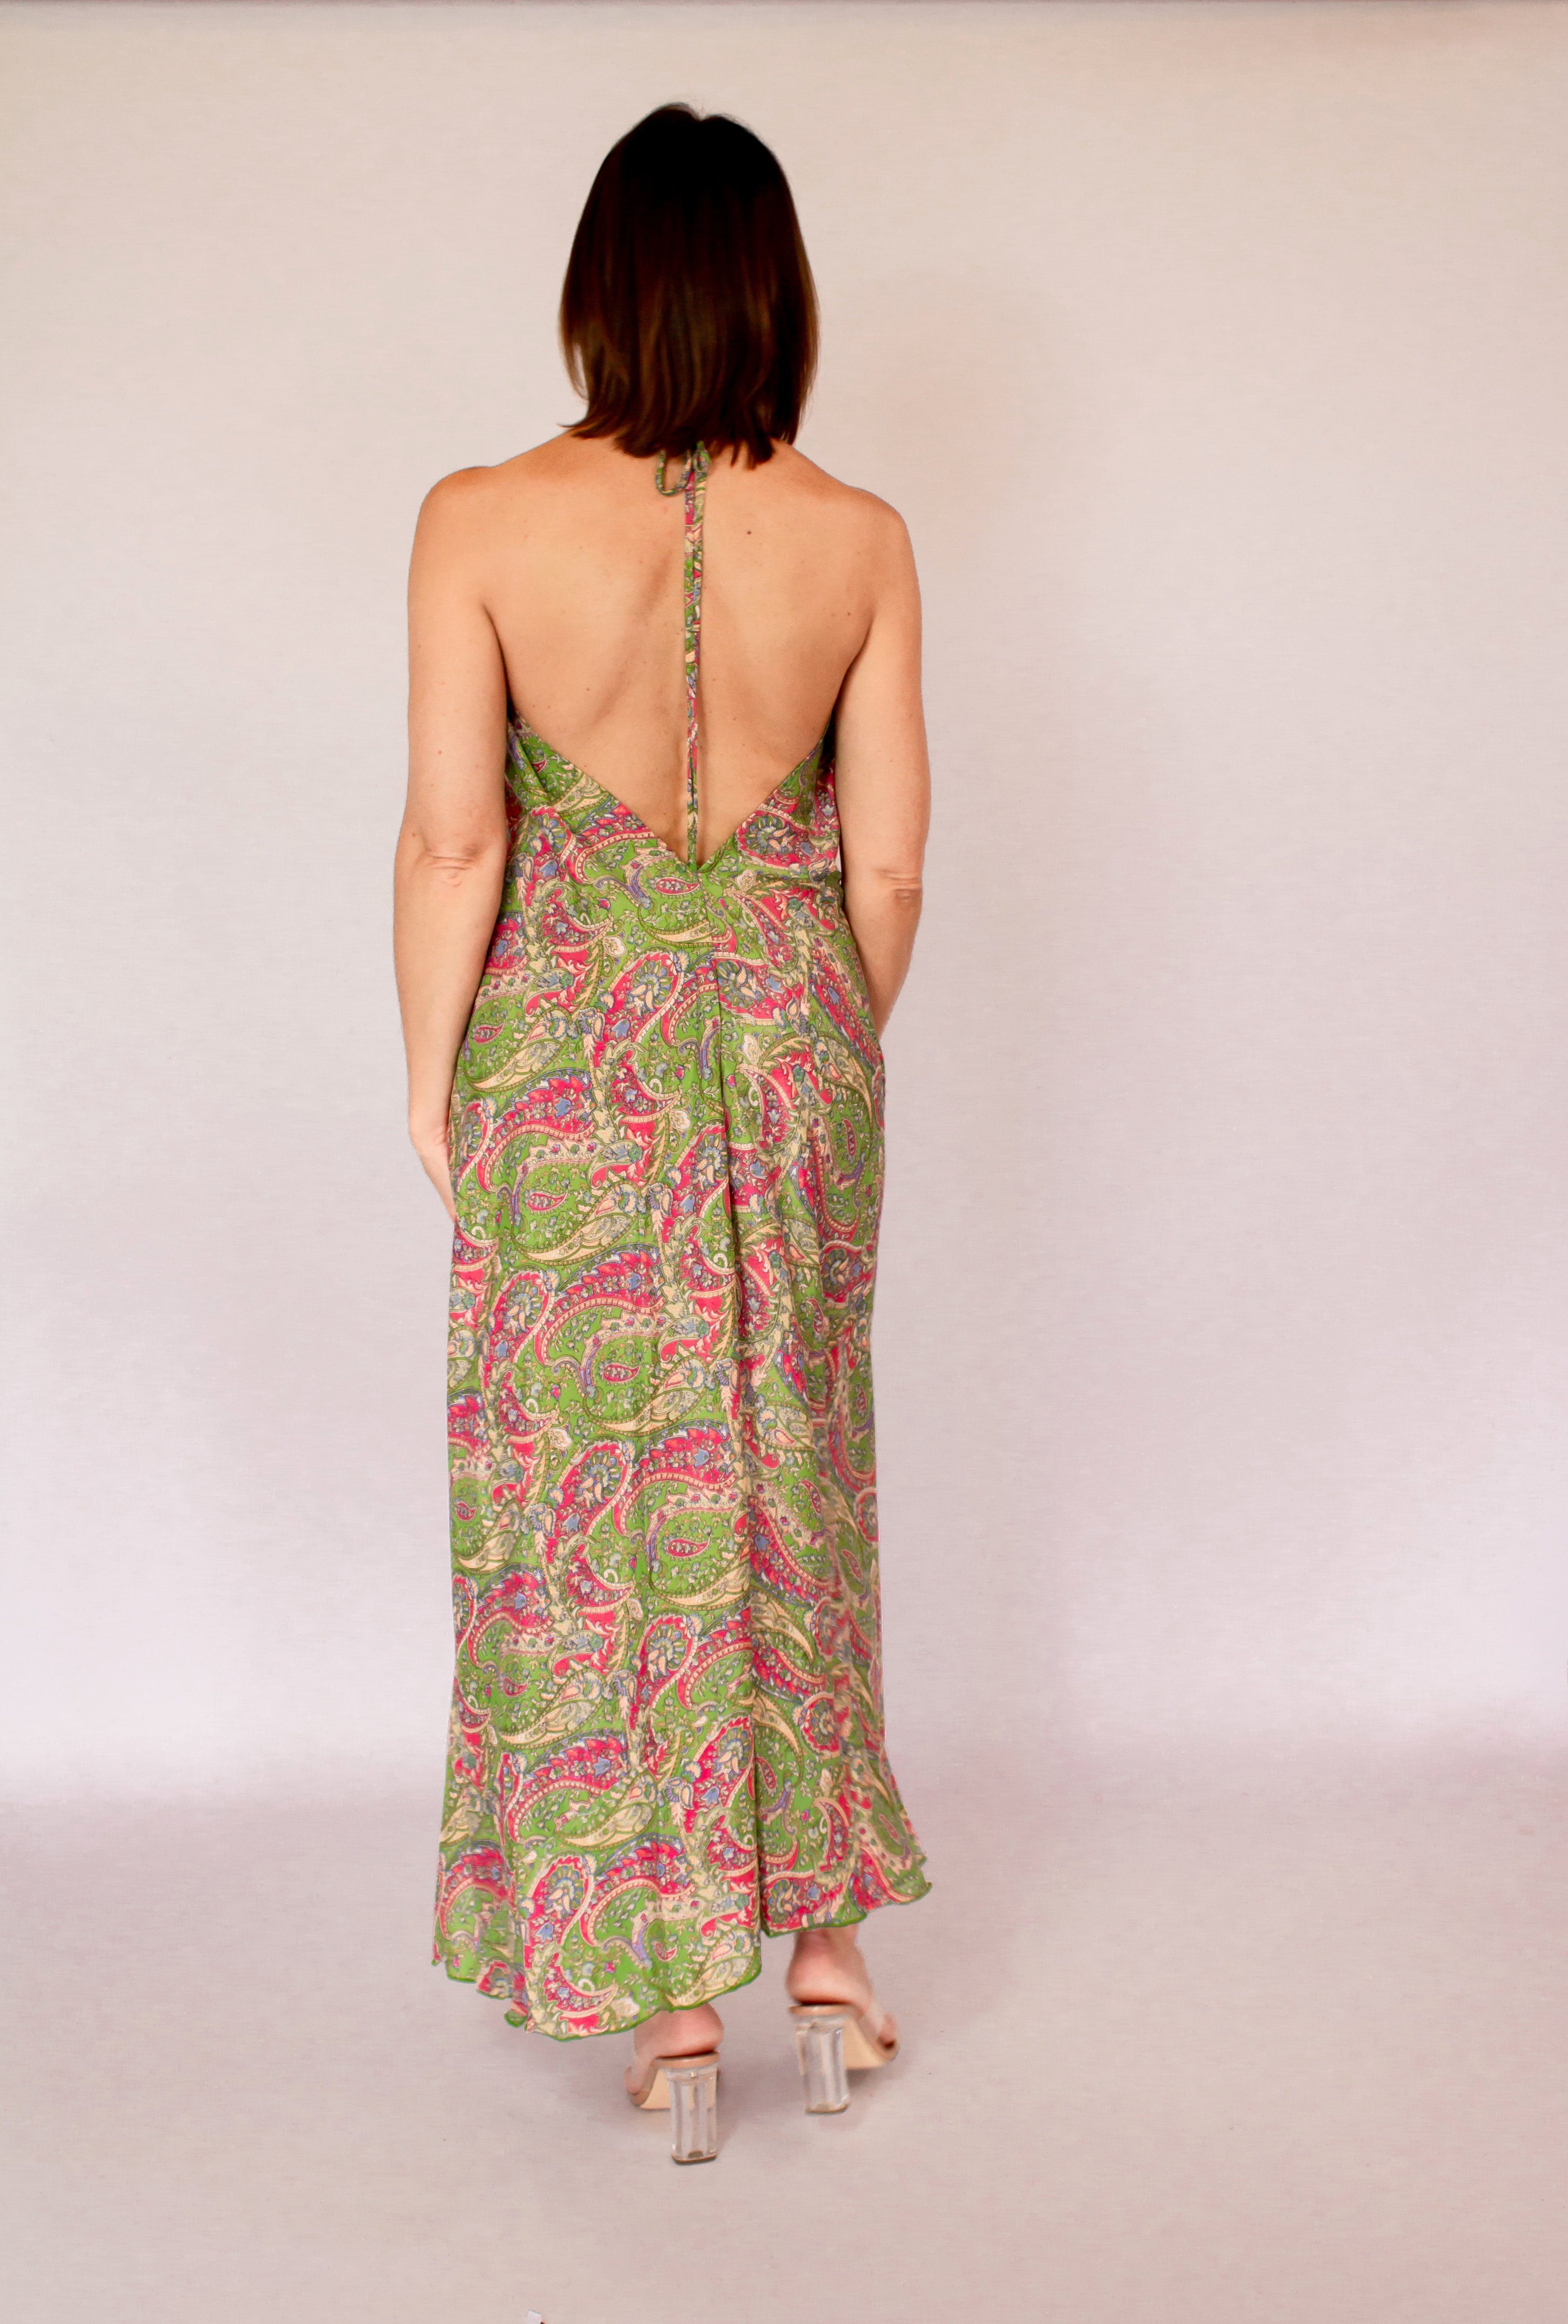 MonCaprise by grün-pink Strandkleid Maxikleid Clothè Passform, leicht luftig Rückenausschnitt ausgestellte tiefem leicht Seidenkleid Kleid & mit